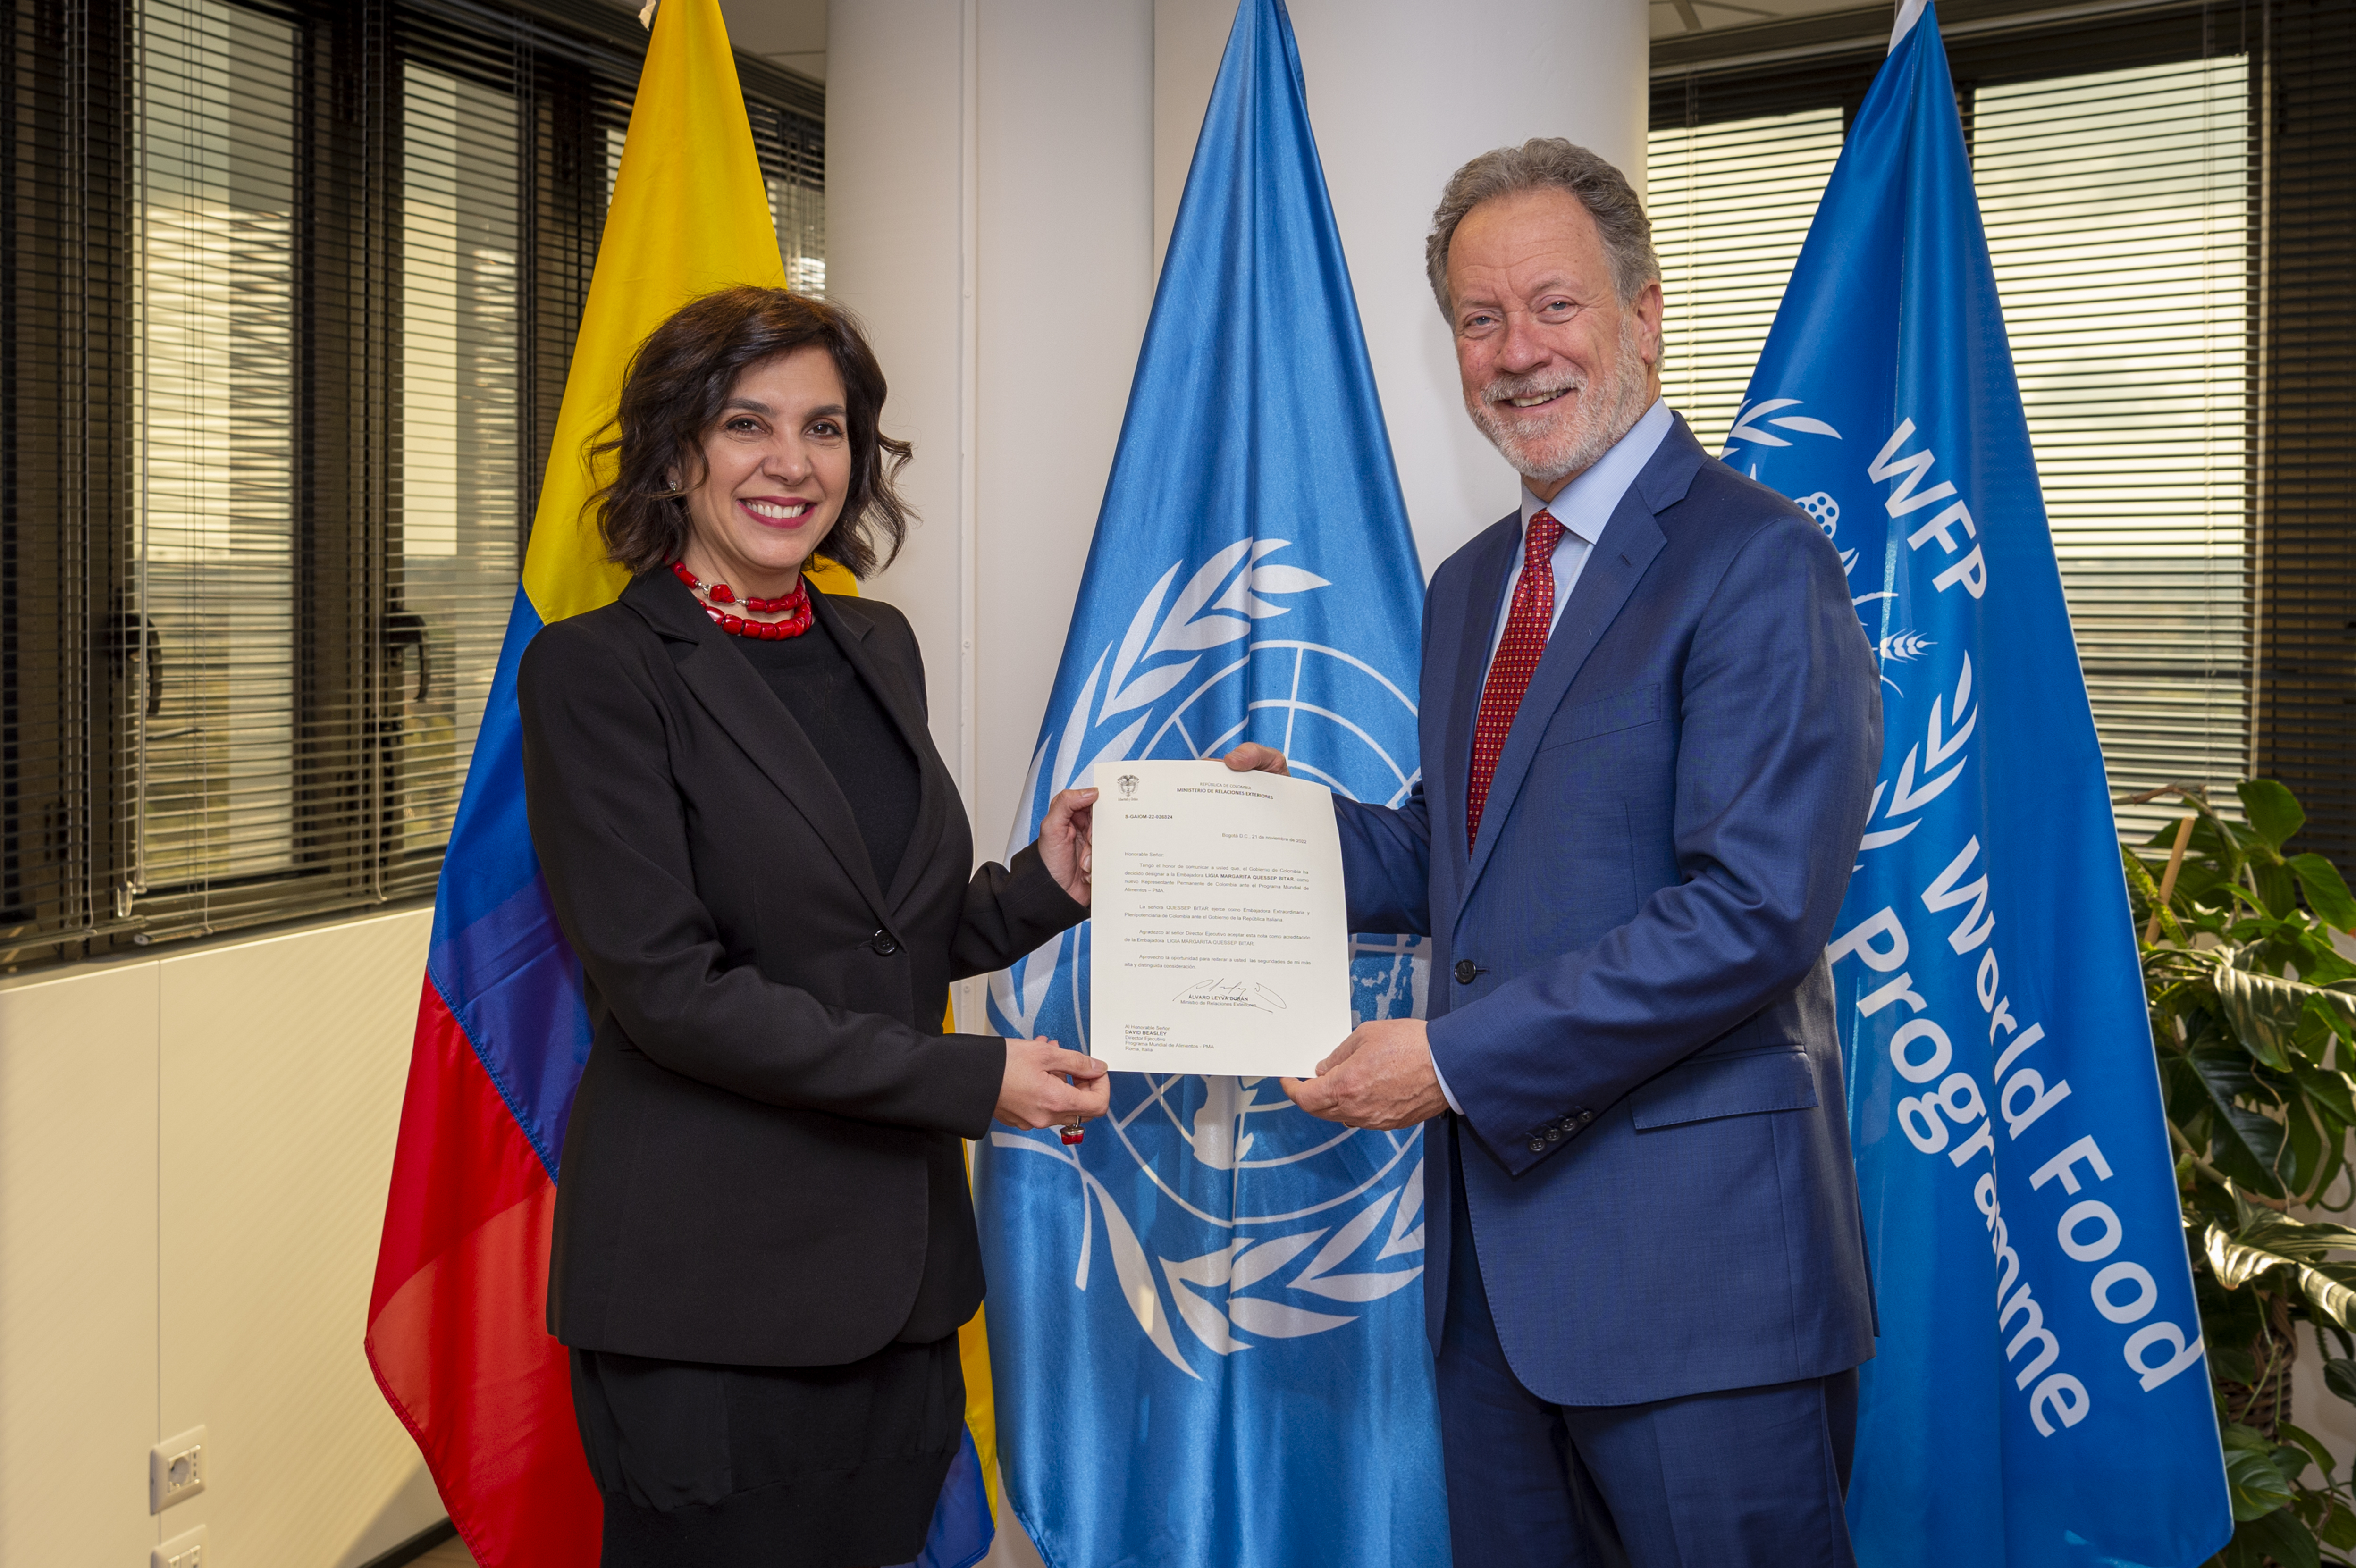 Embajadora de Colombia en Italia, Ligia Margarita Quessep Bitar, presentó su acreditación como Representante Permanente ante el Programa Mundial de Alimentos